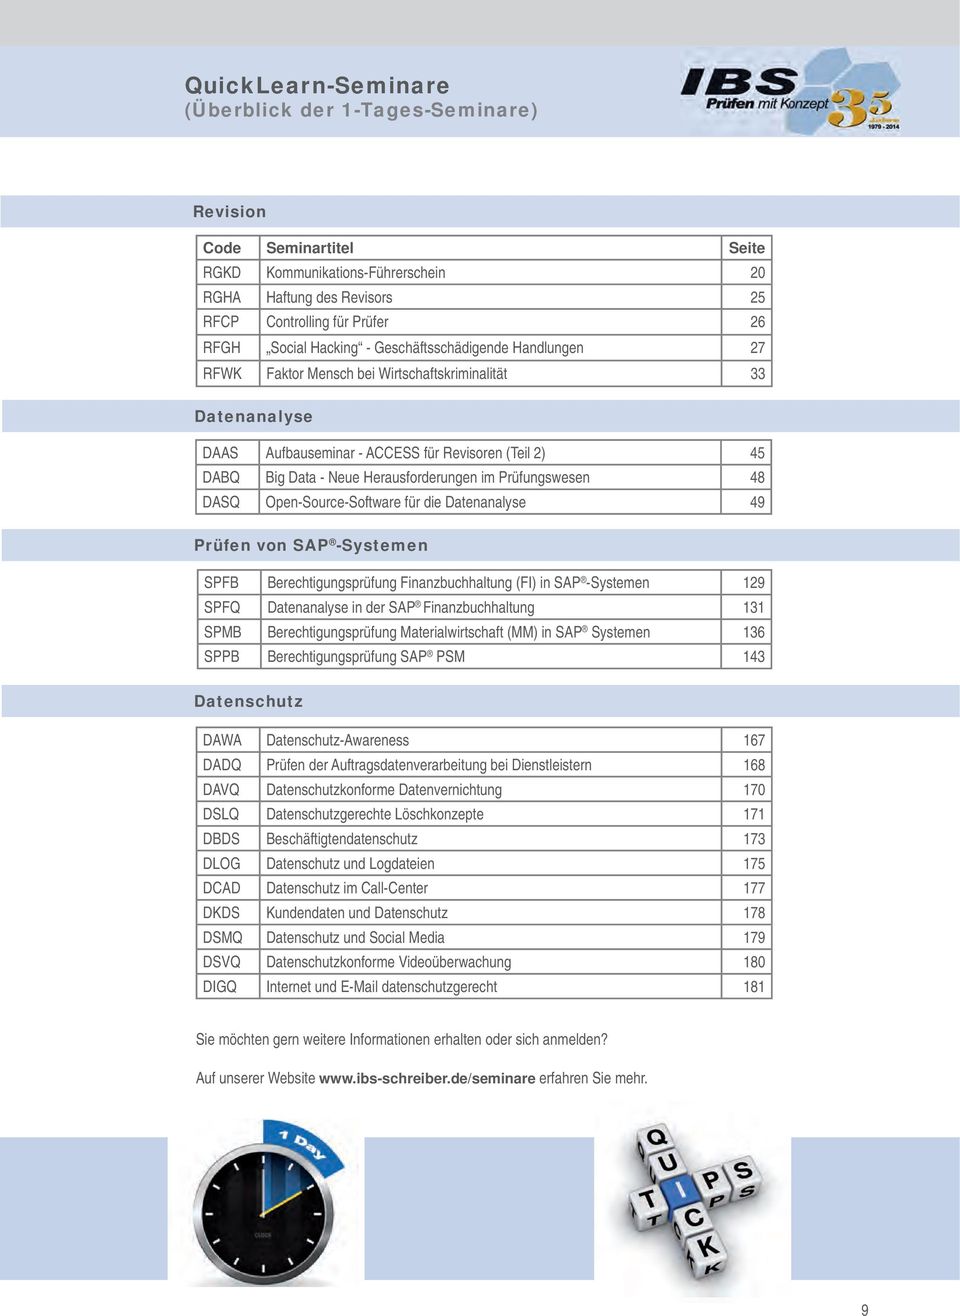 Herausforderungen im Prüfungswesen 48 DASQ Open-Source-Software für die Datenanalyse 49 Prüfen von SAP -Systemen SPFB Berechtigungsprüfung Finanzbuchhaltung (FI) in SAP -Systemen 129 SPFQ